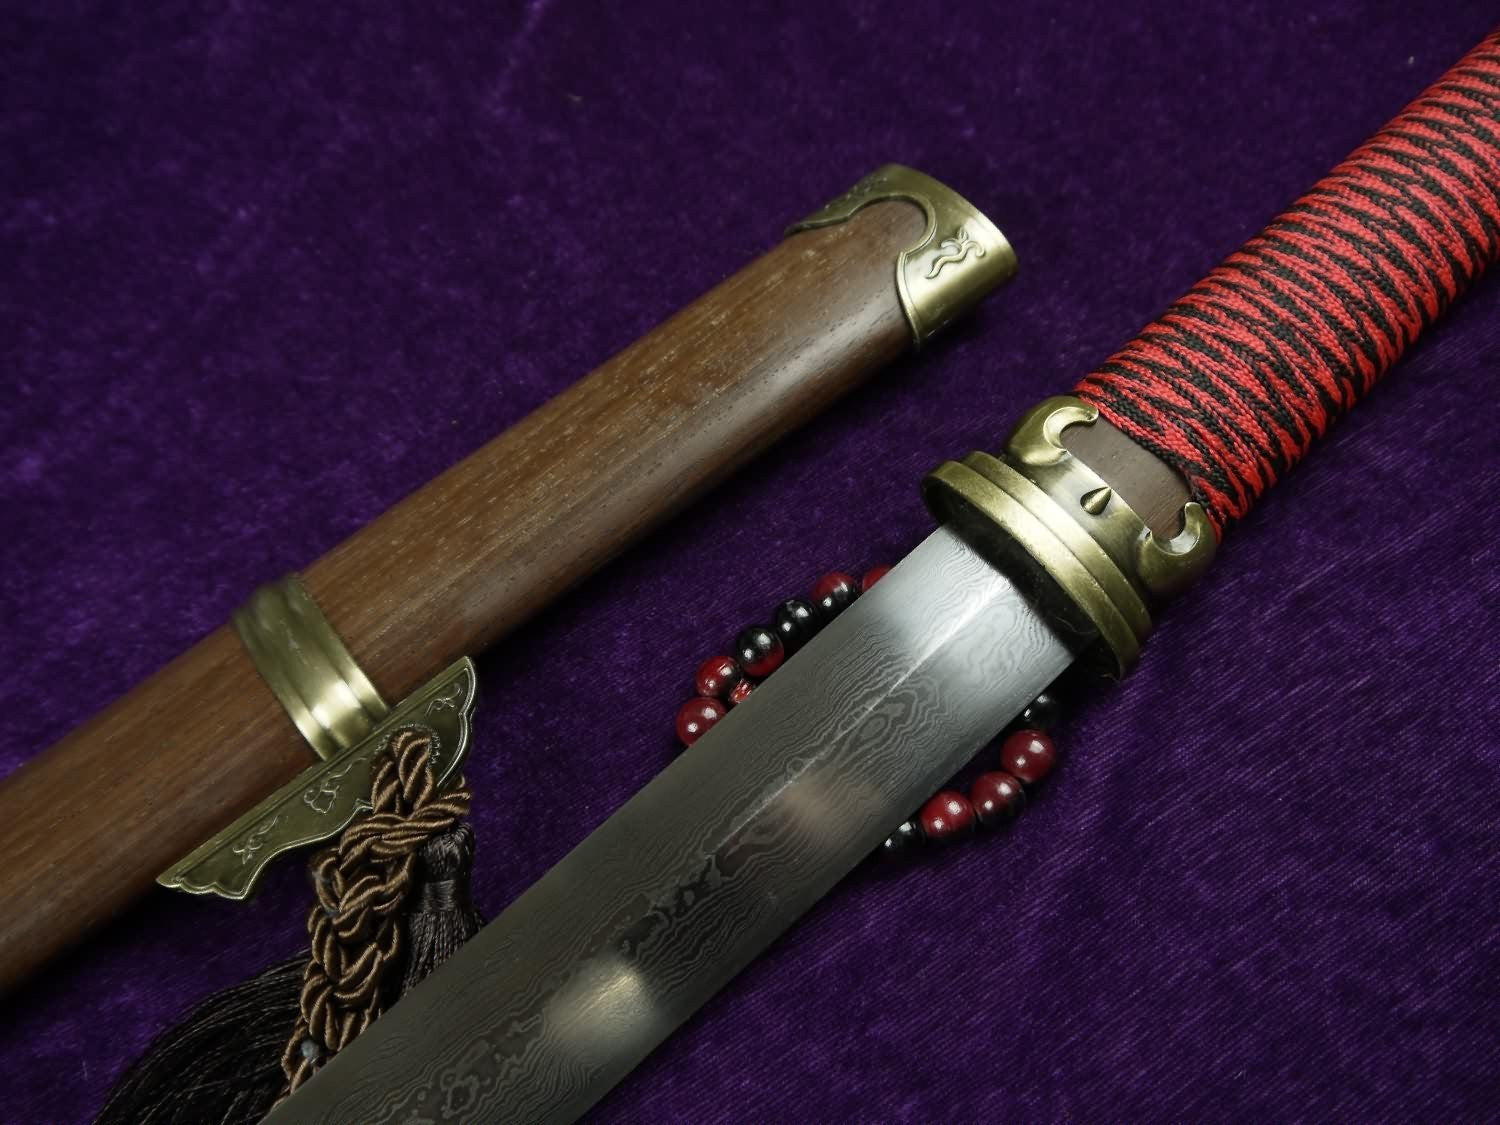 Han jian/Pei Dong jian/Damascus steel blade/Rosewood scabbard - Chinese sword shop